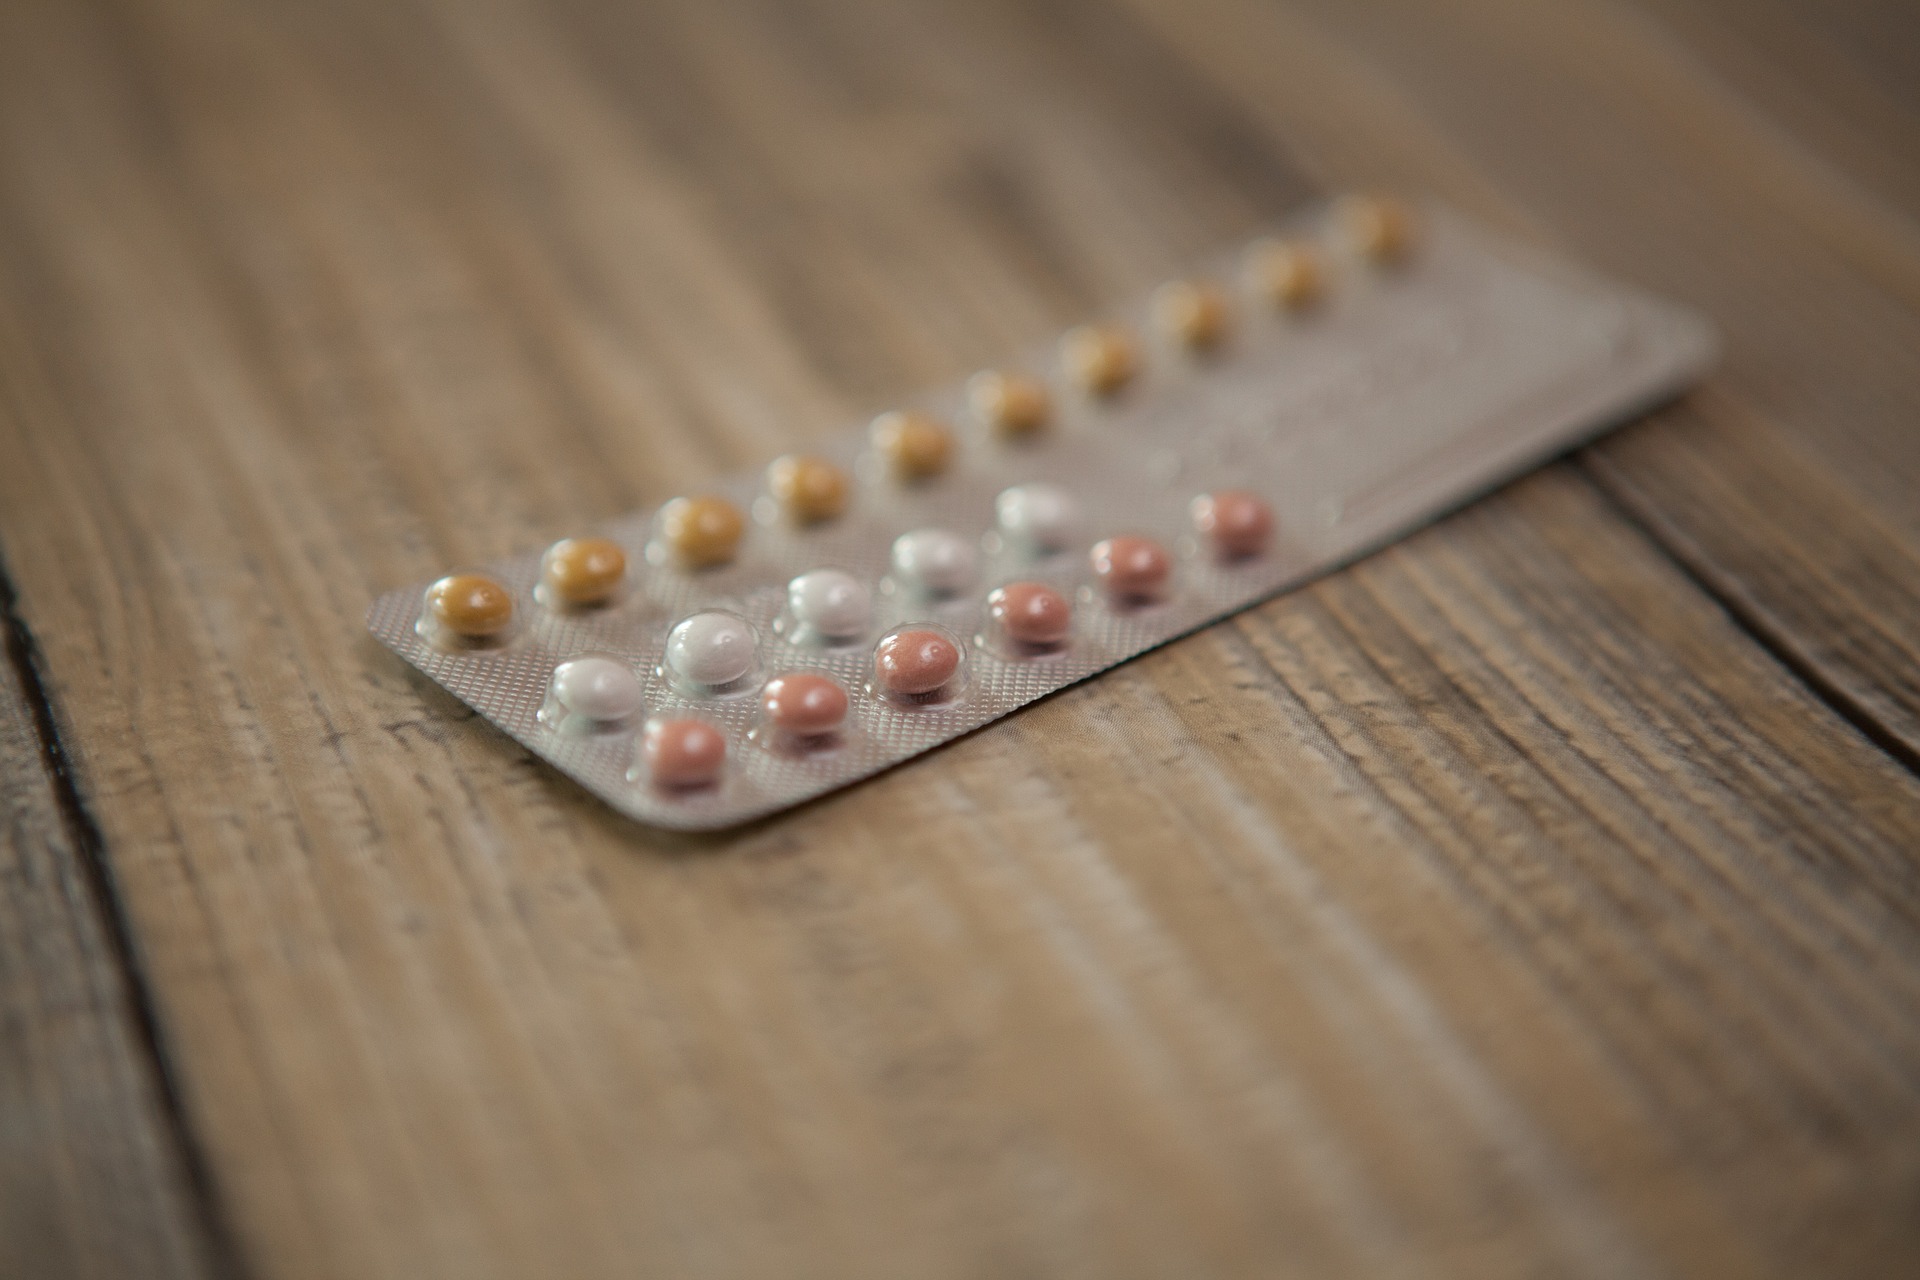 Používáte hormonální antikoncepci?